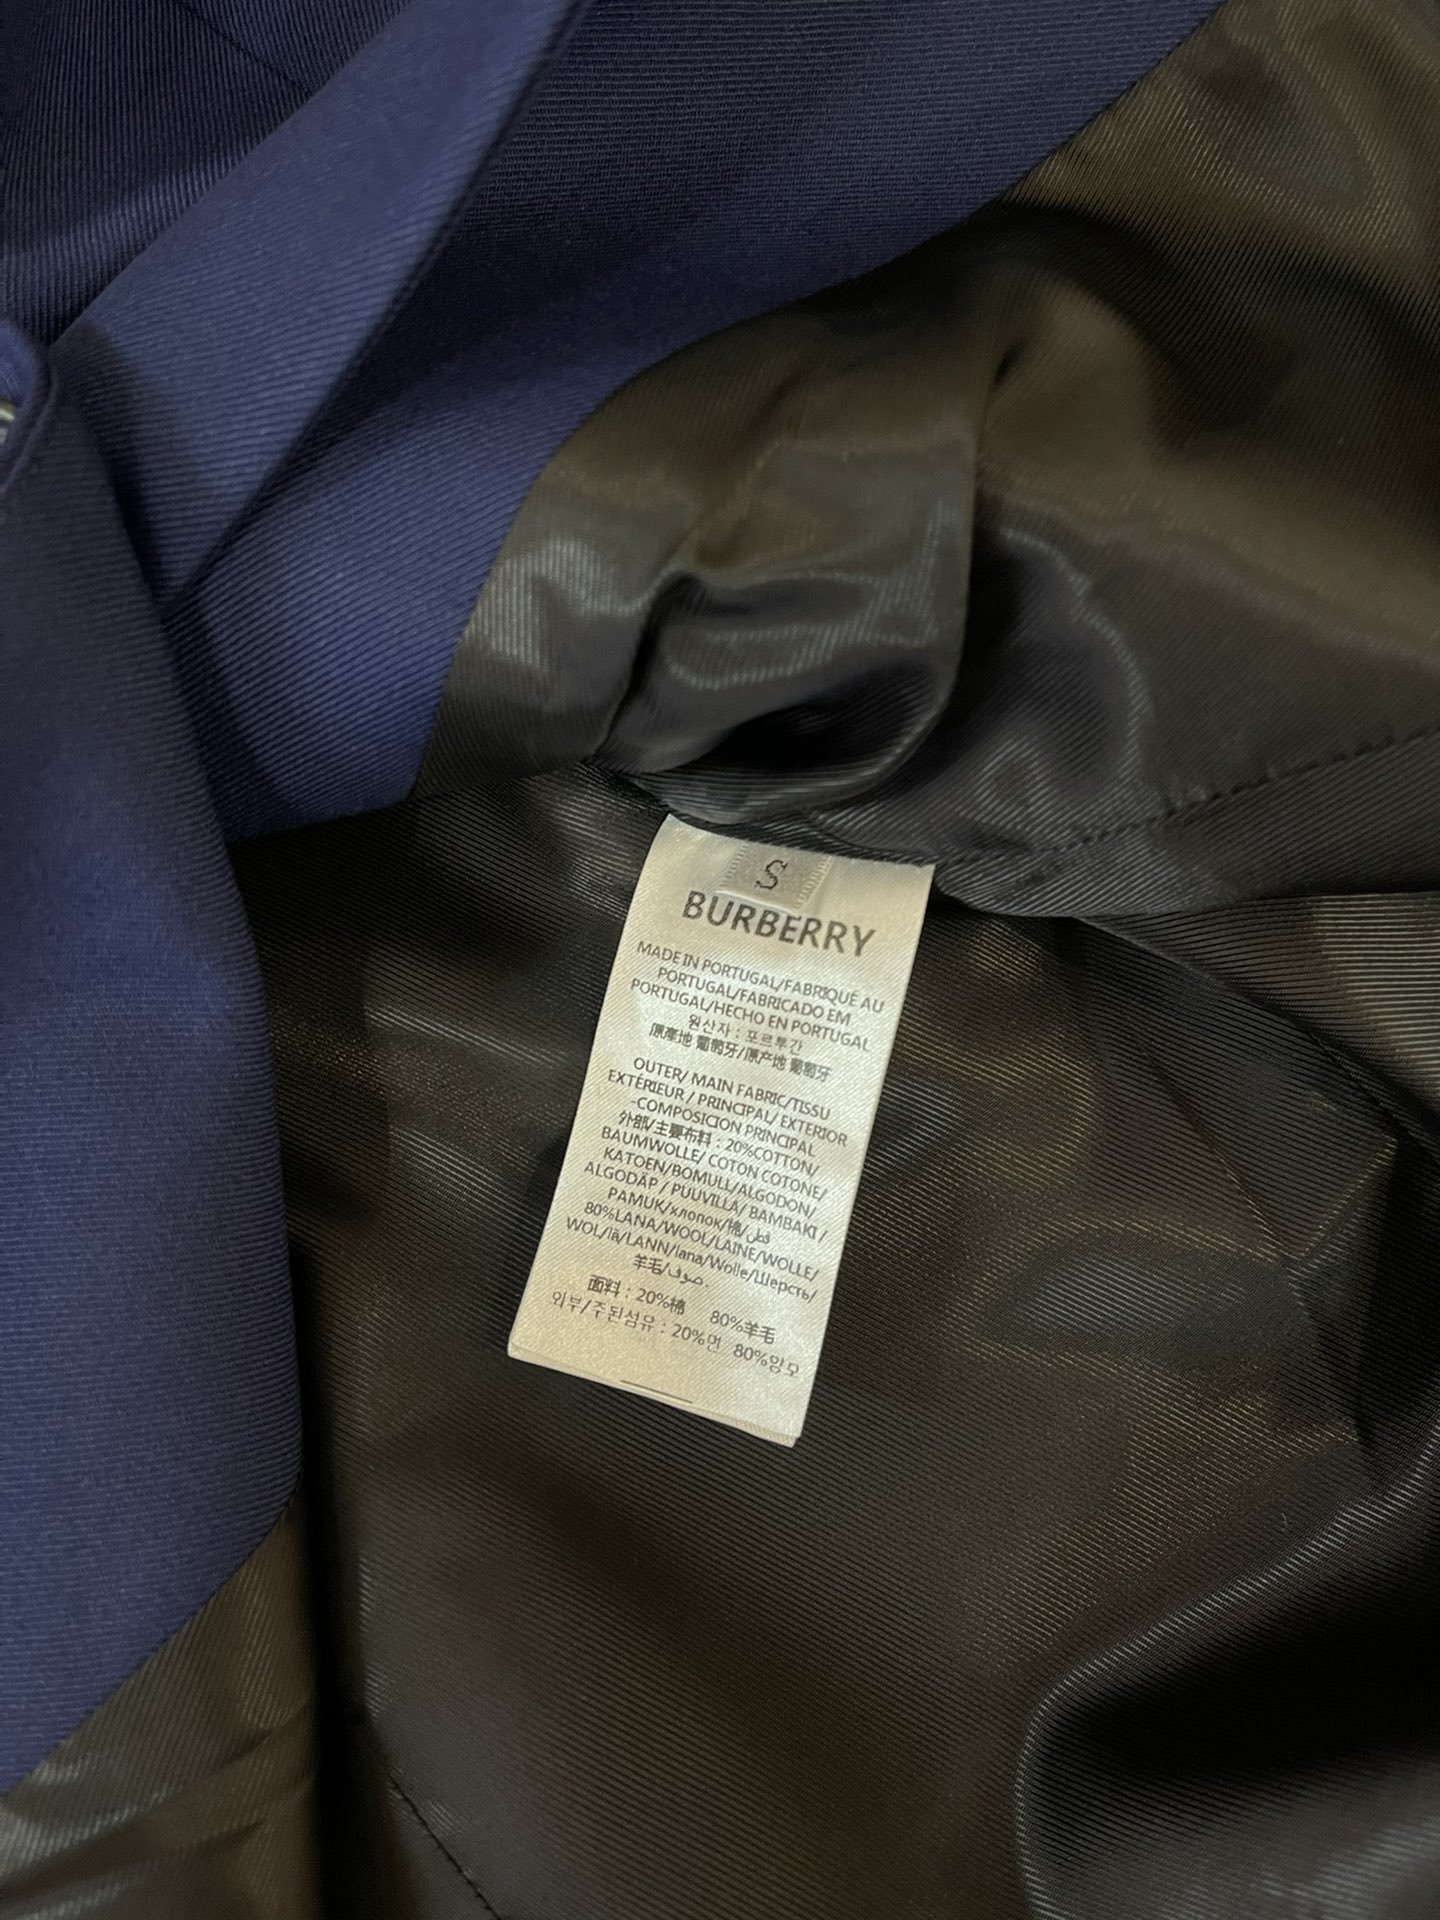 23683#新款西装外套Burberry专柜顶级货80%羊毛面料西装外套黑色蓝色SMLXL